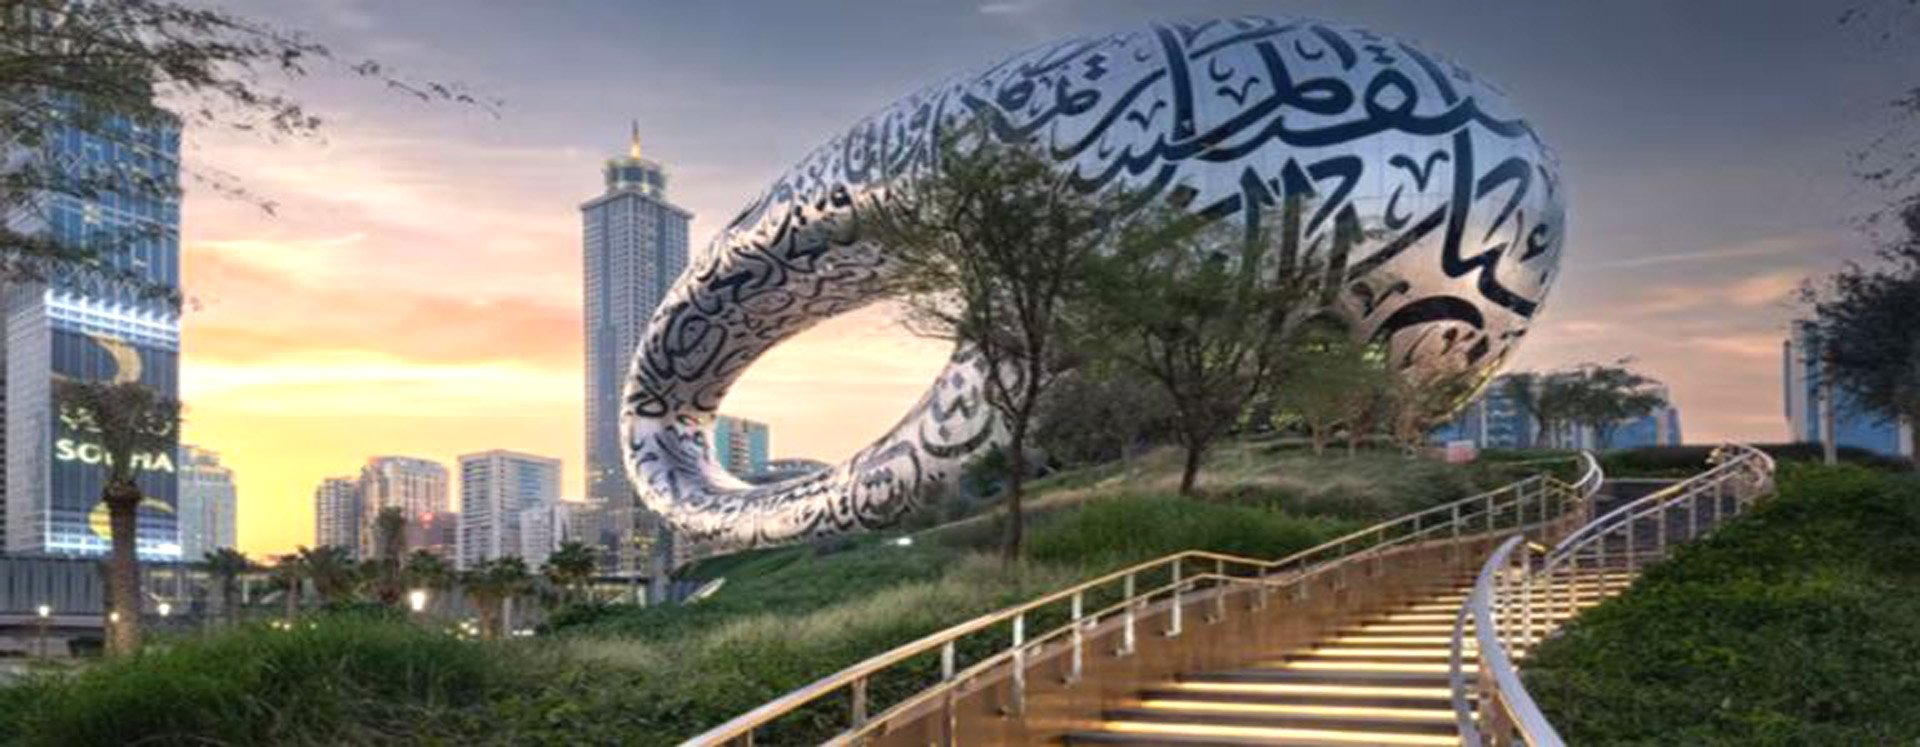 Future Museum (Exposed Aggregate) – Dubai